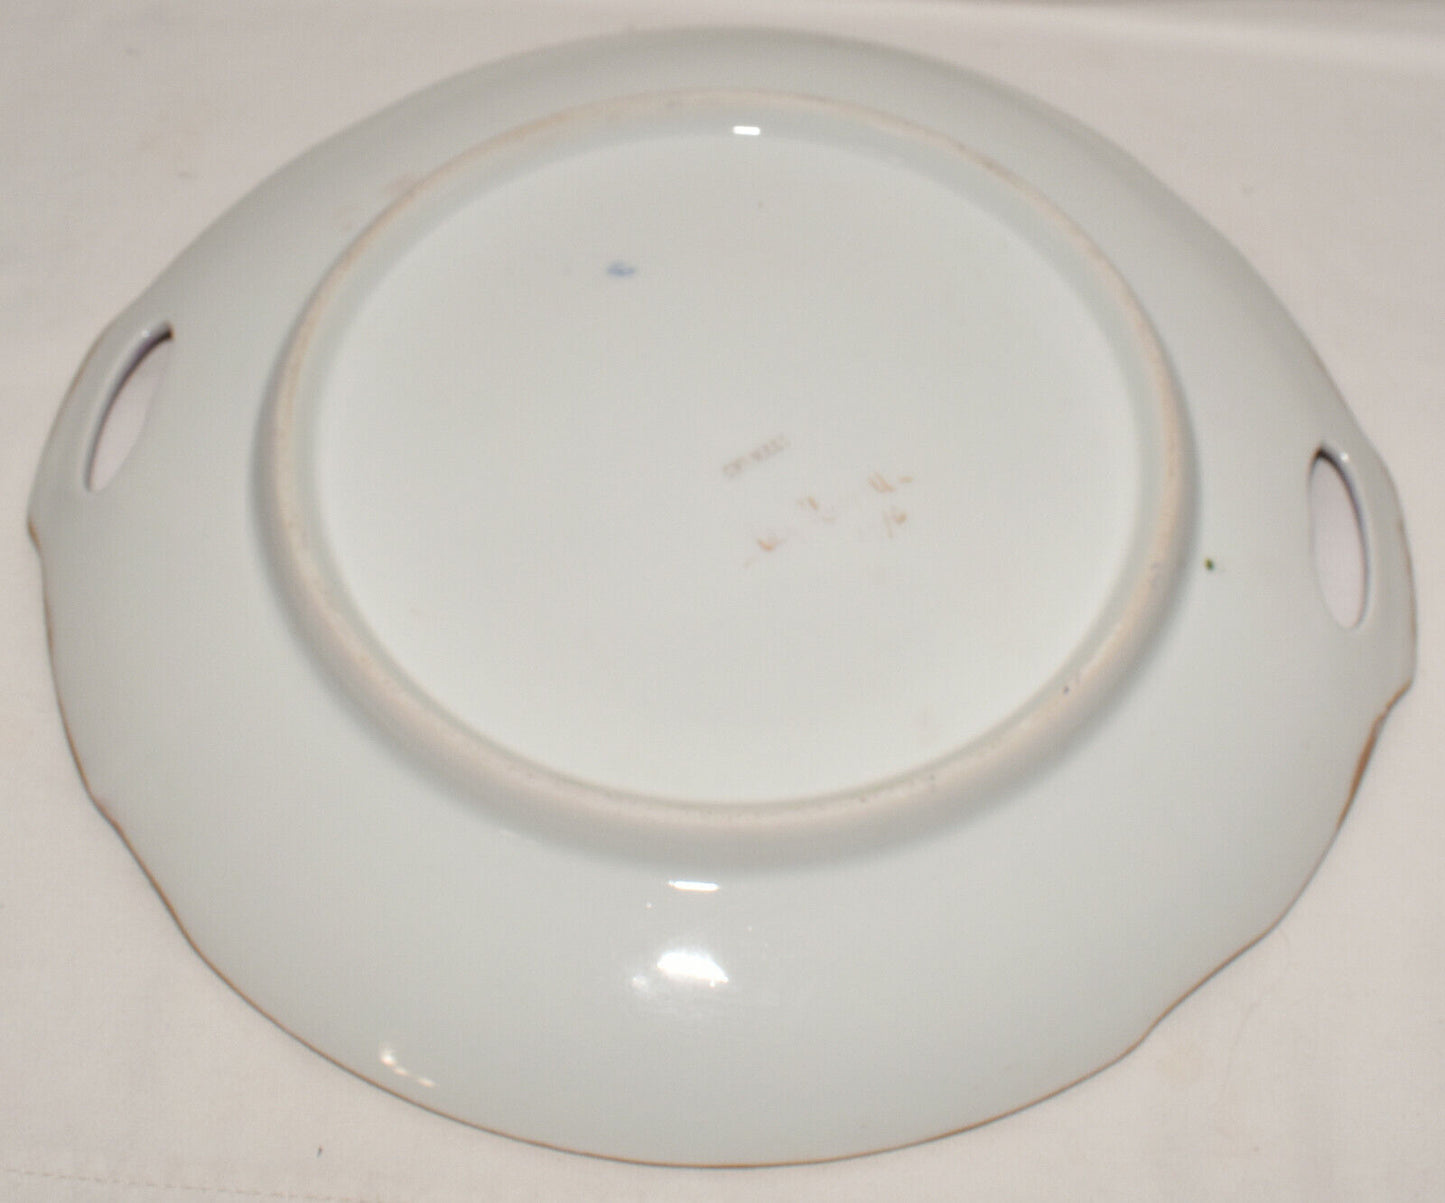 Antique German Serving Platter Hand Painted Porcelain Platter Tab Handles Signed